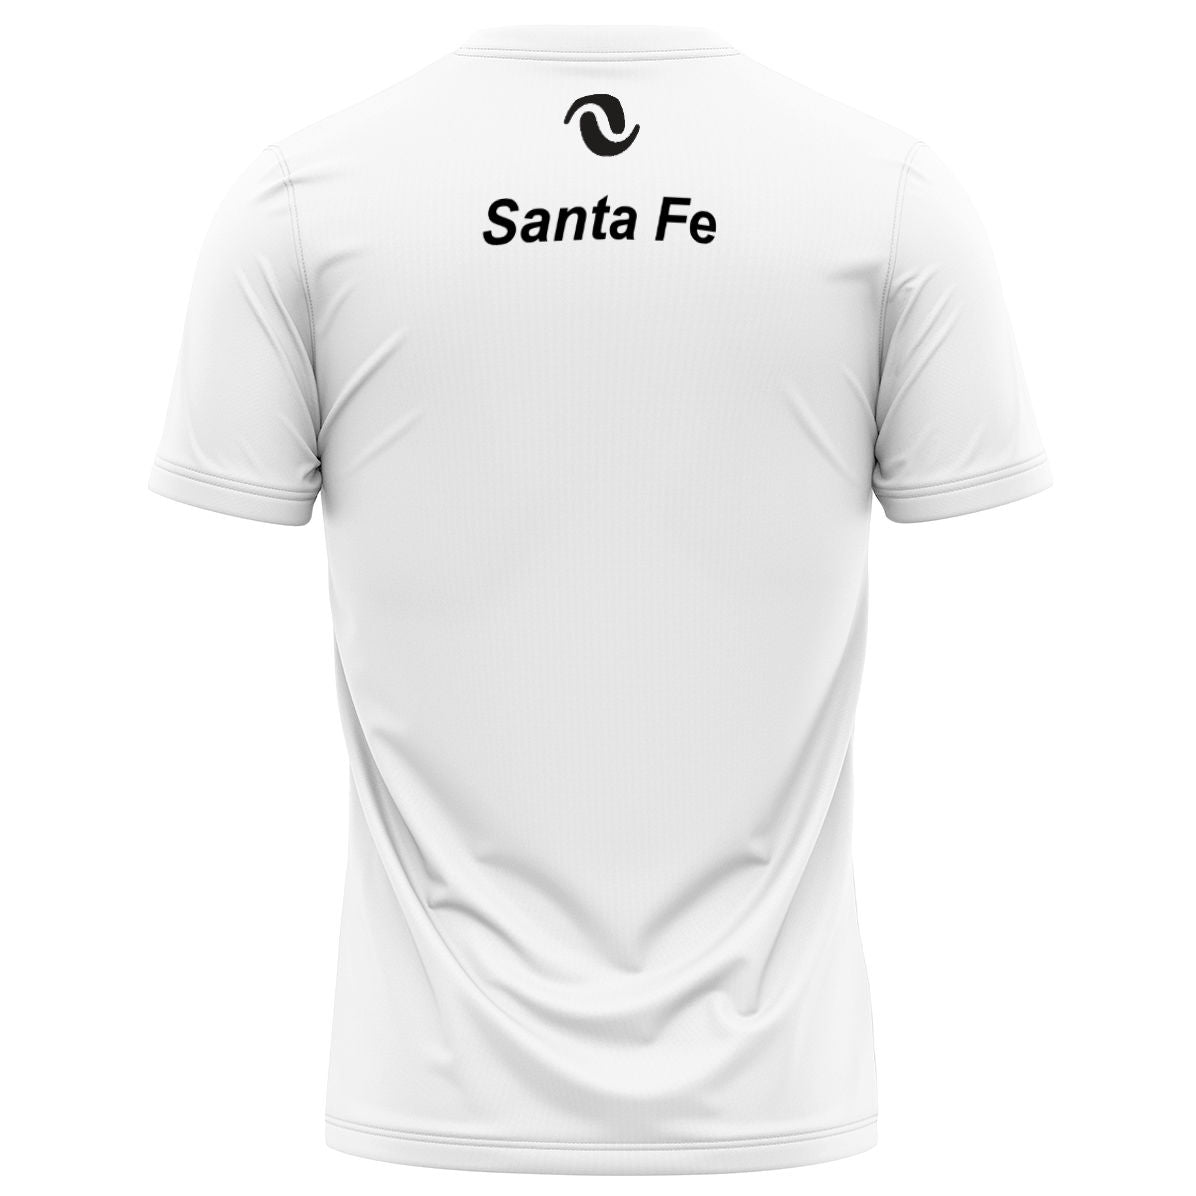 NV Santa Fe - Performance Shirt